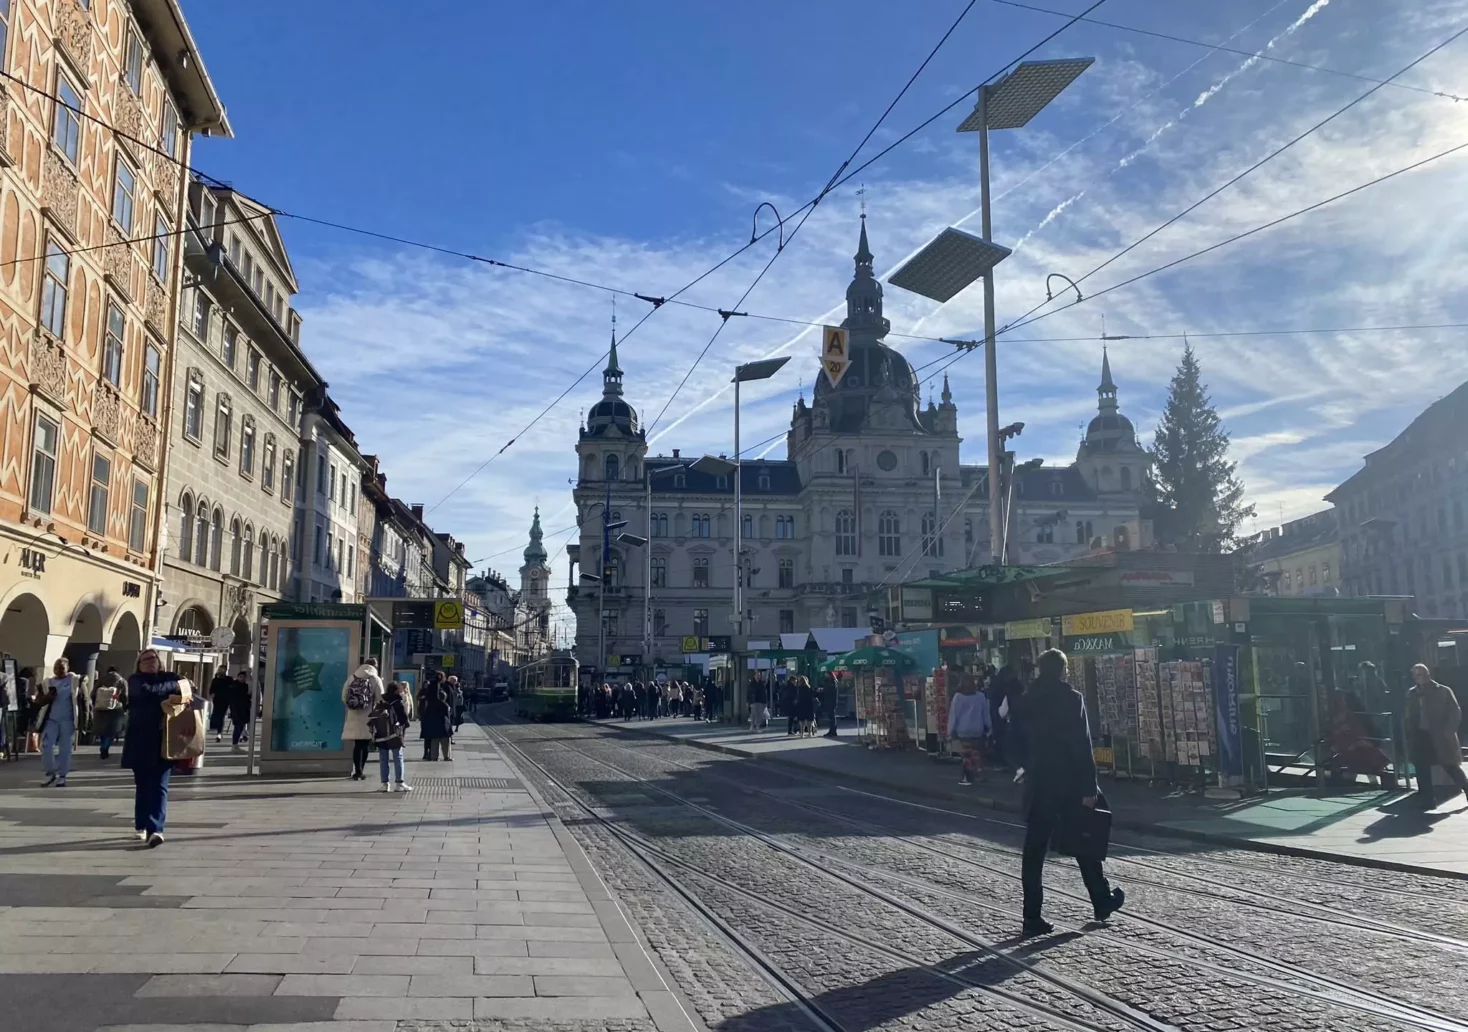 Bild auf 5min.at zeigt den Grazer Hauptplatz mit Rathaus.